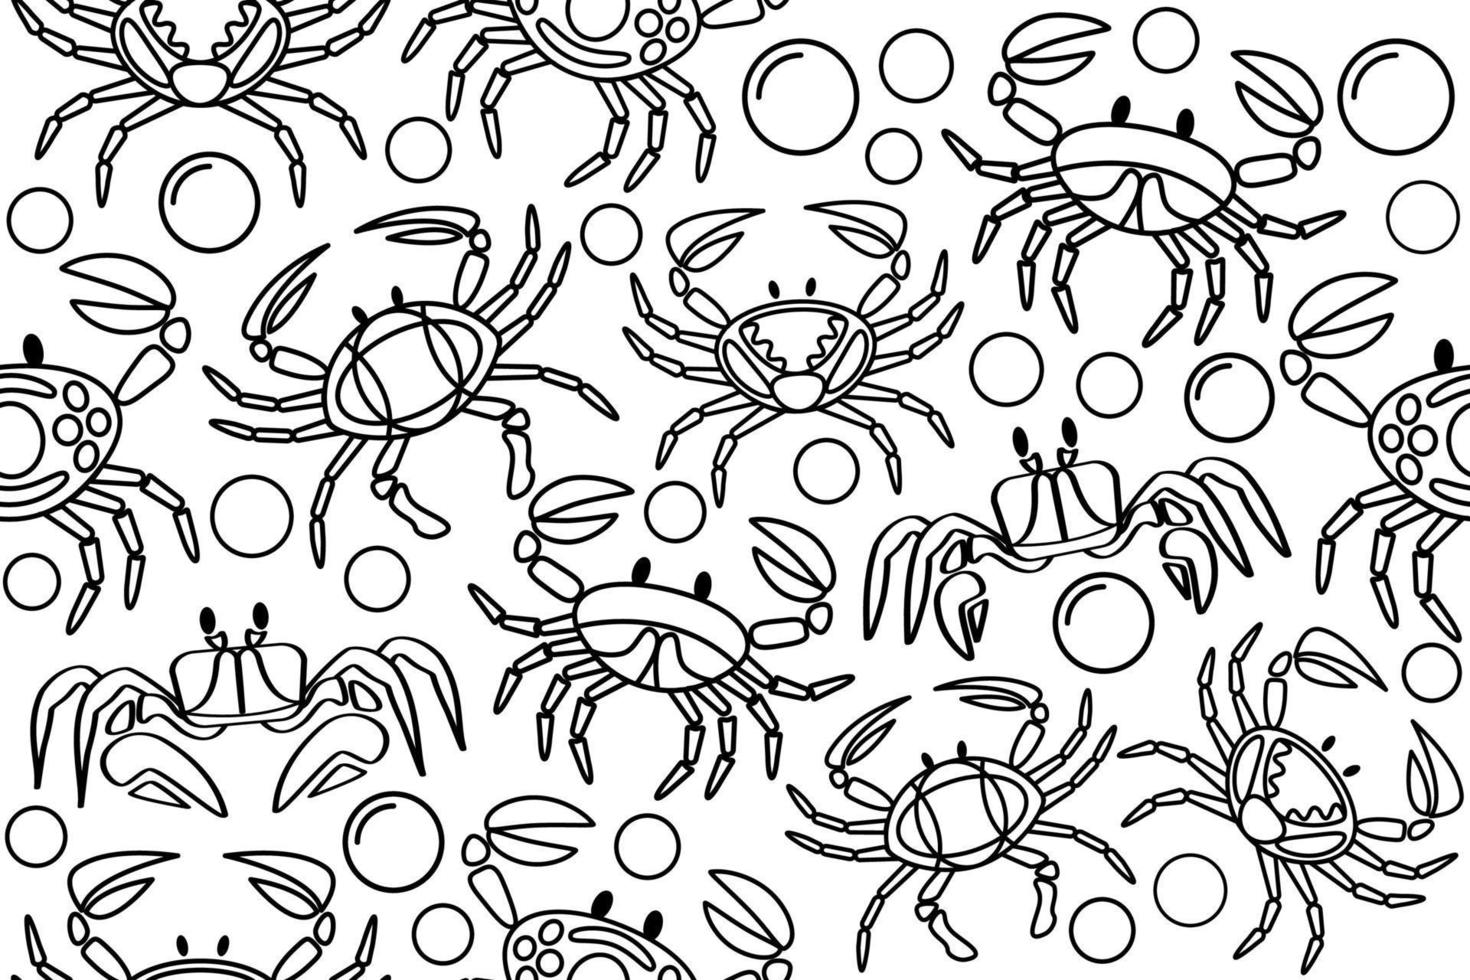 modèle sans couture de crabes noir et blanc. crabes et bulles d'air dans une eau avec de fines lignes noires. modèle sans couture de vecteur de crabe de contour.